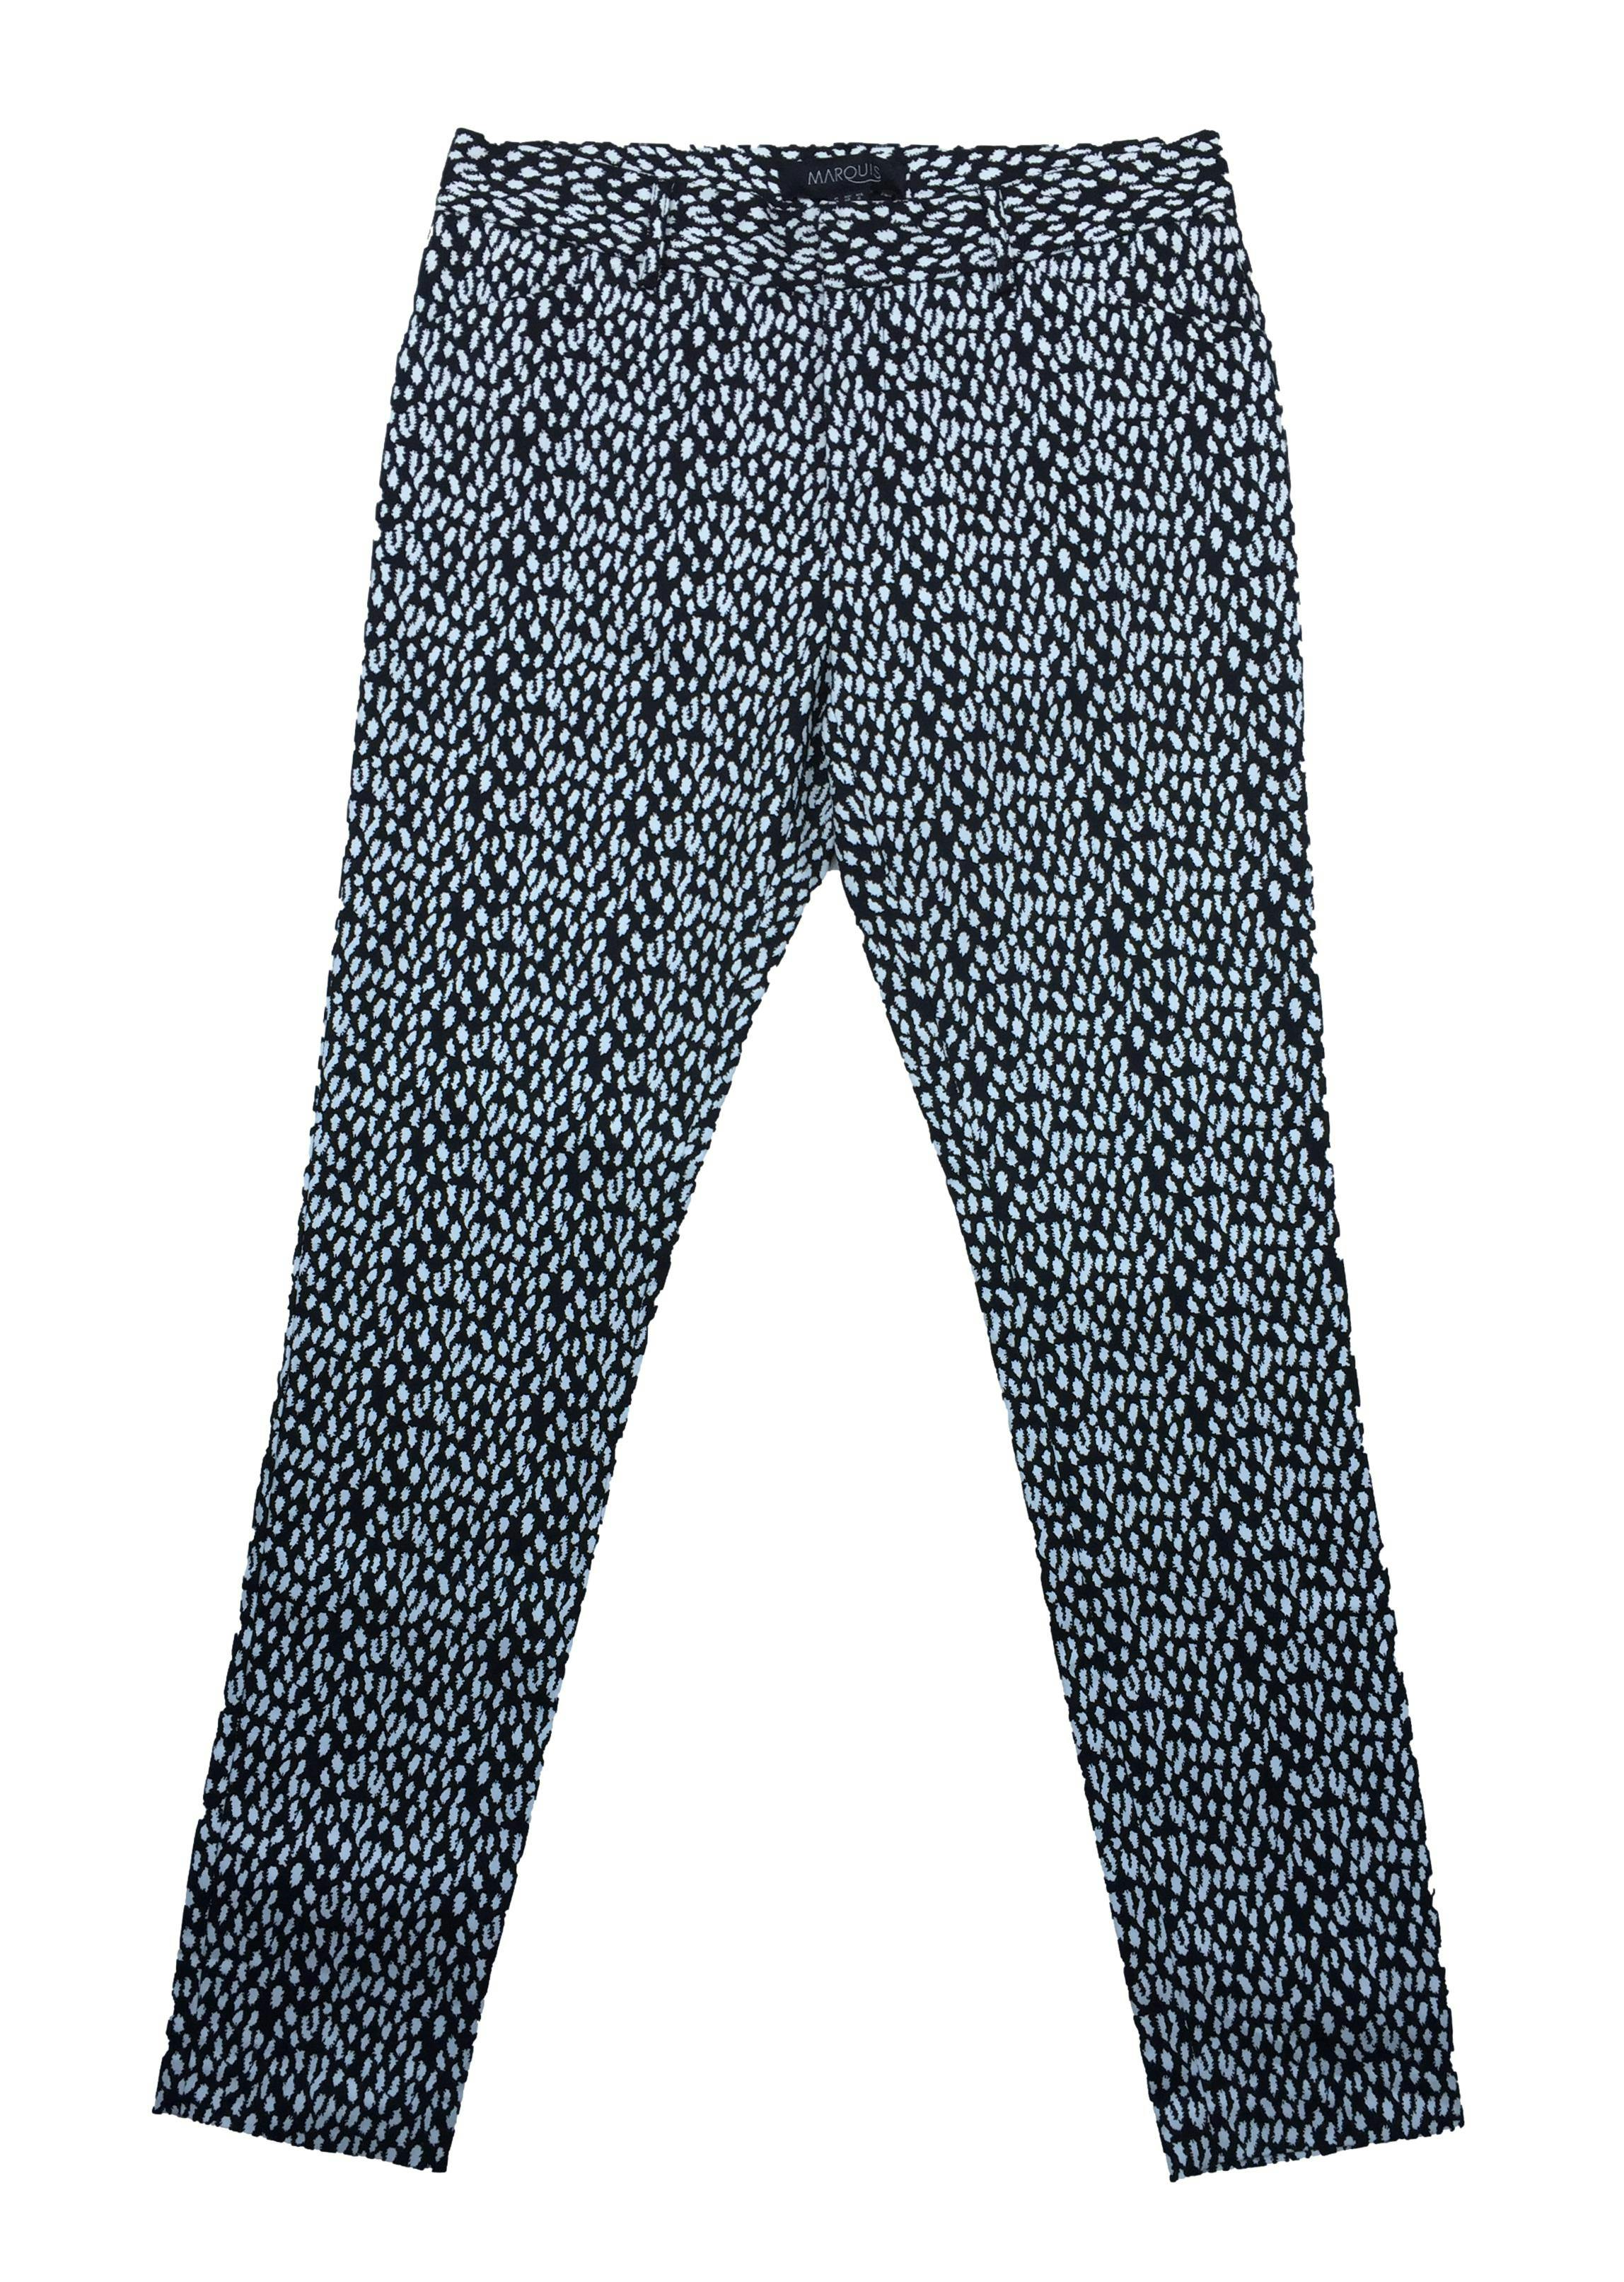 Pantalón Marquis slim fit con estampado en blanco y negro, bolsillos frontales y falsos bolsillos posteriores, tela 97% algodón. Cintura 80cm, Tiro 25cm, Largo 101cm.